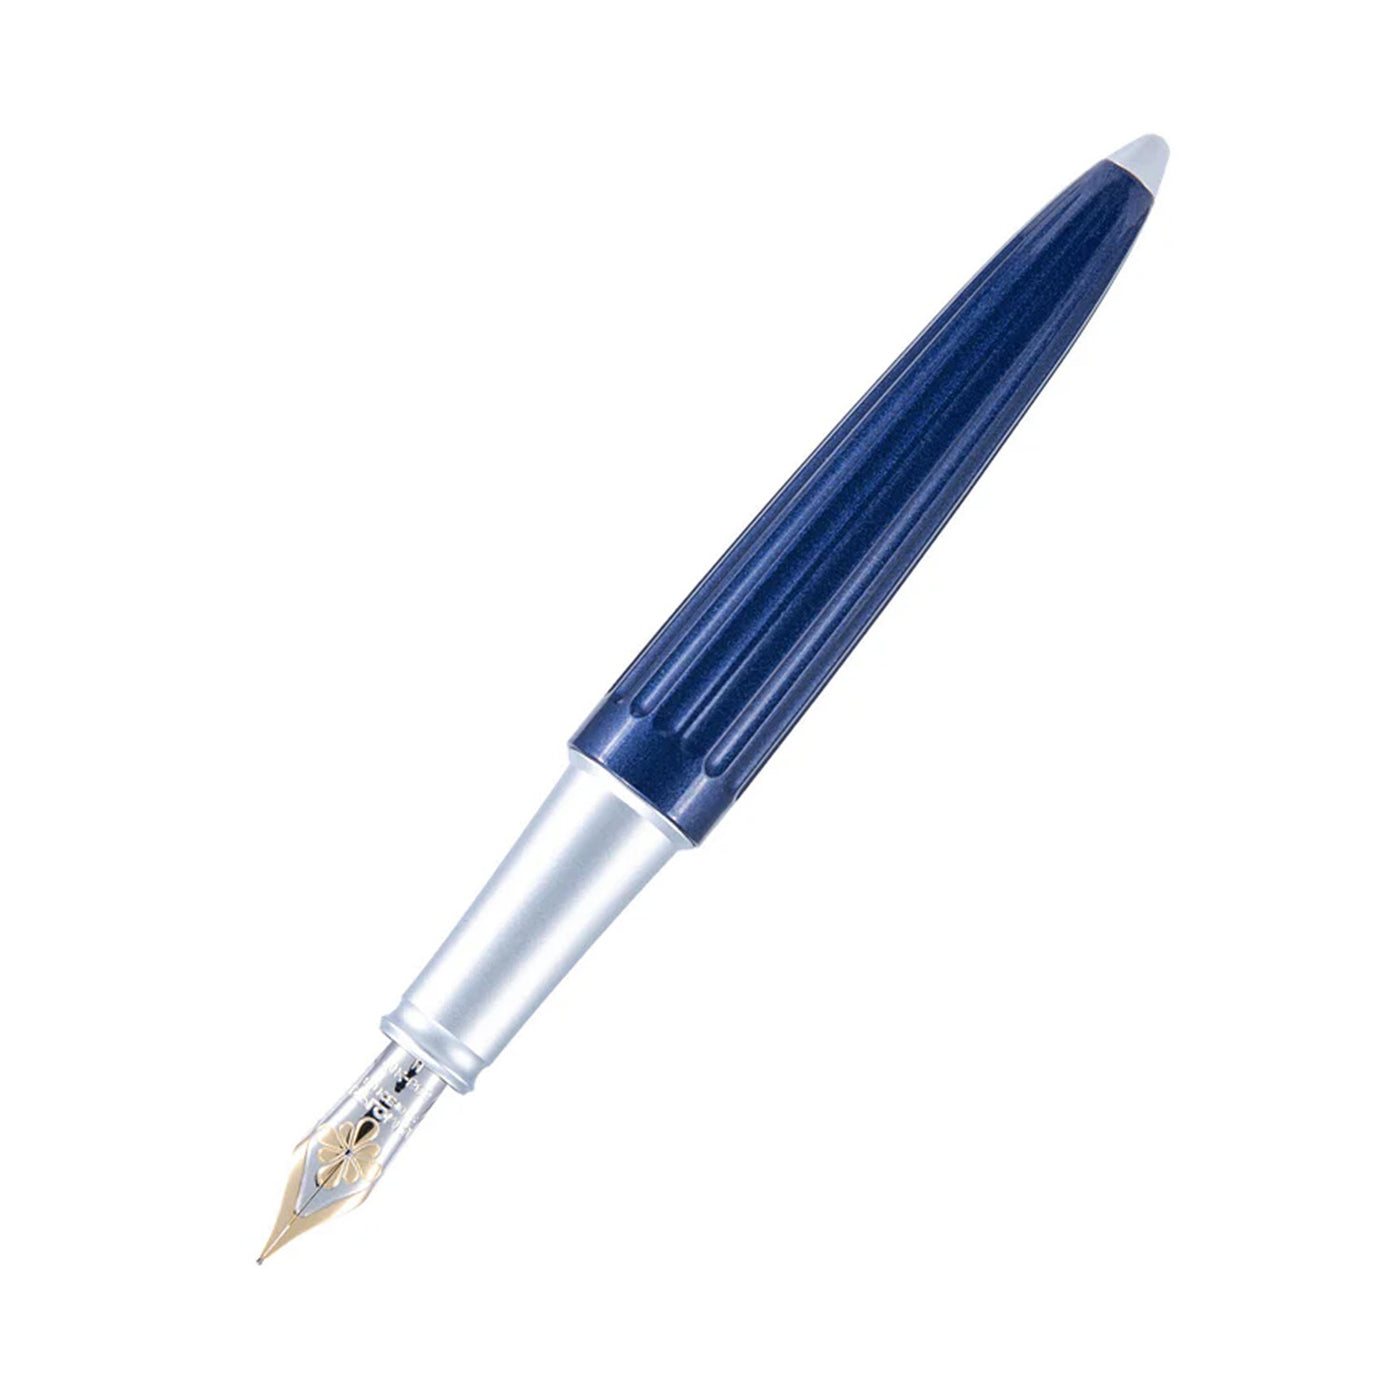  Diplomat Aero 14K Gold Fountain Pen - Midnight Blue 2